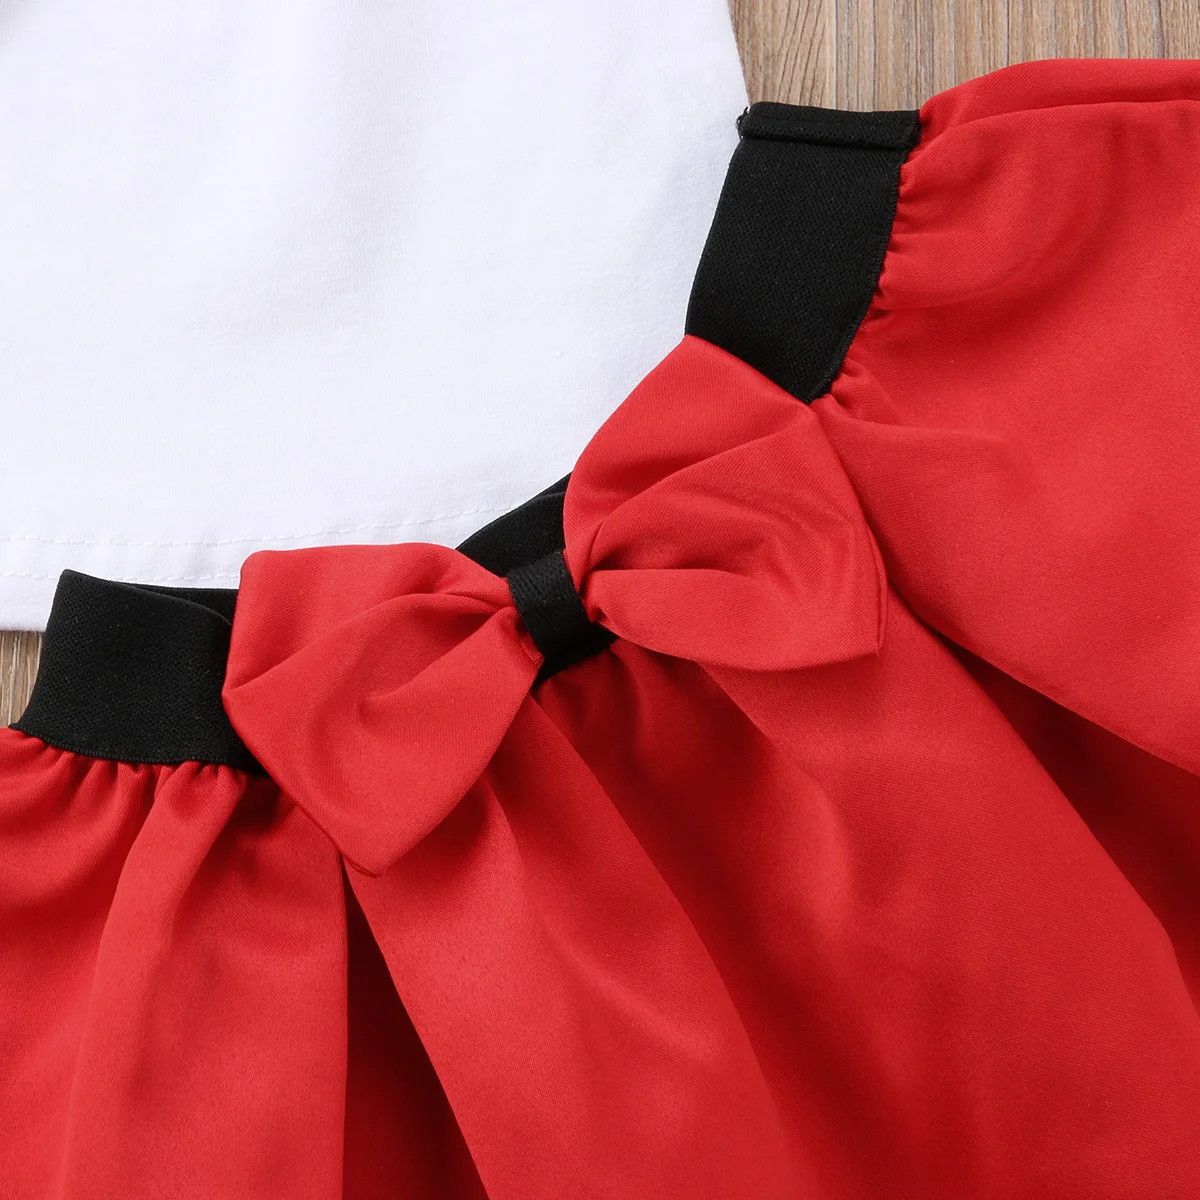 Летняя модная детская блузка с объемными розами и открытыми плечами для маленьких девочек верхняя юбка, одежда